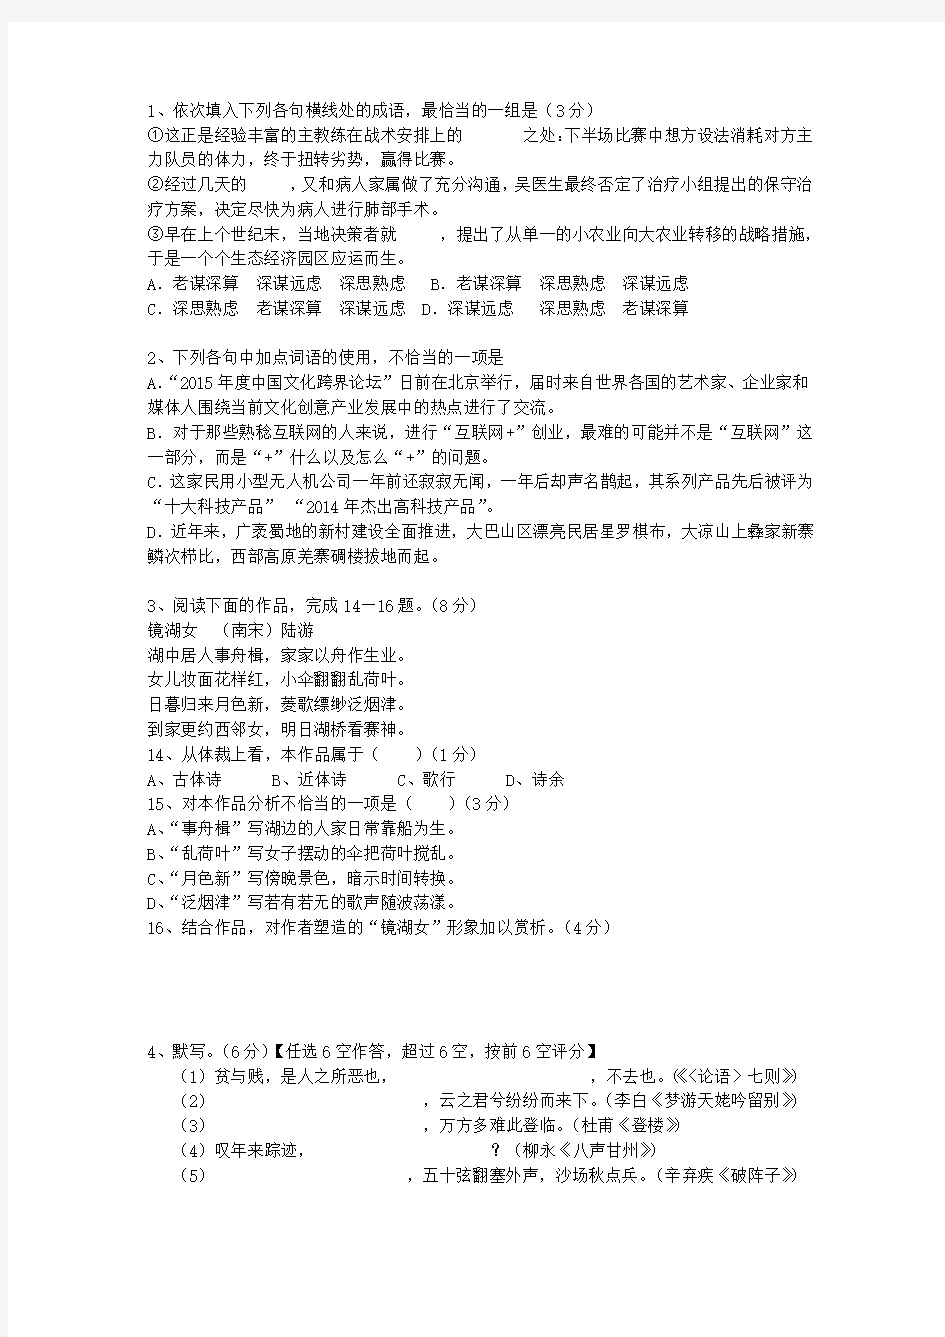 2010黑龙江省高考语文试题及详细答案考试技巧、答题原则